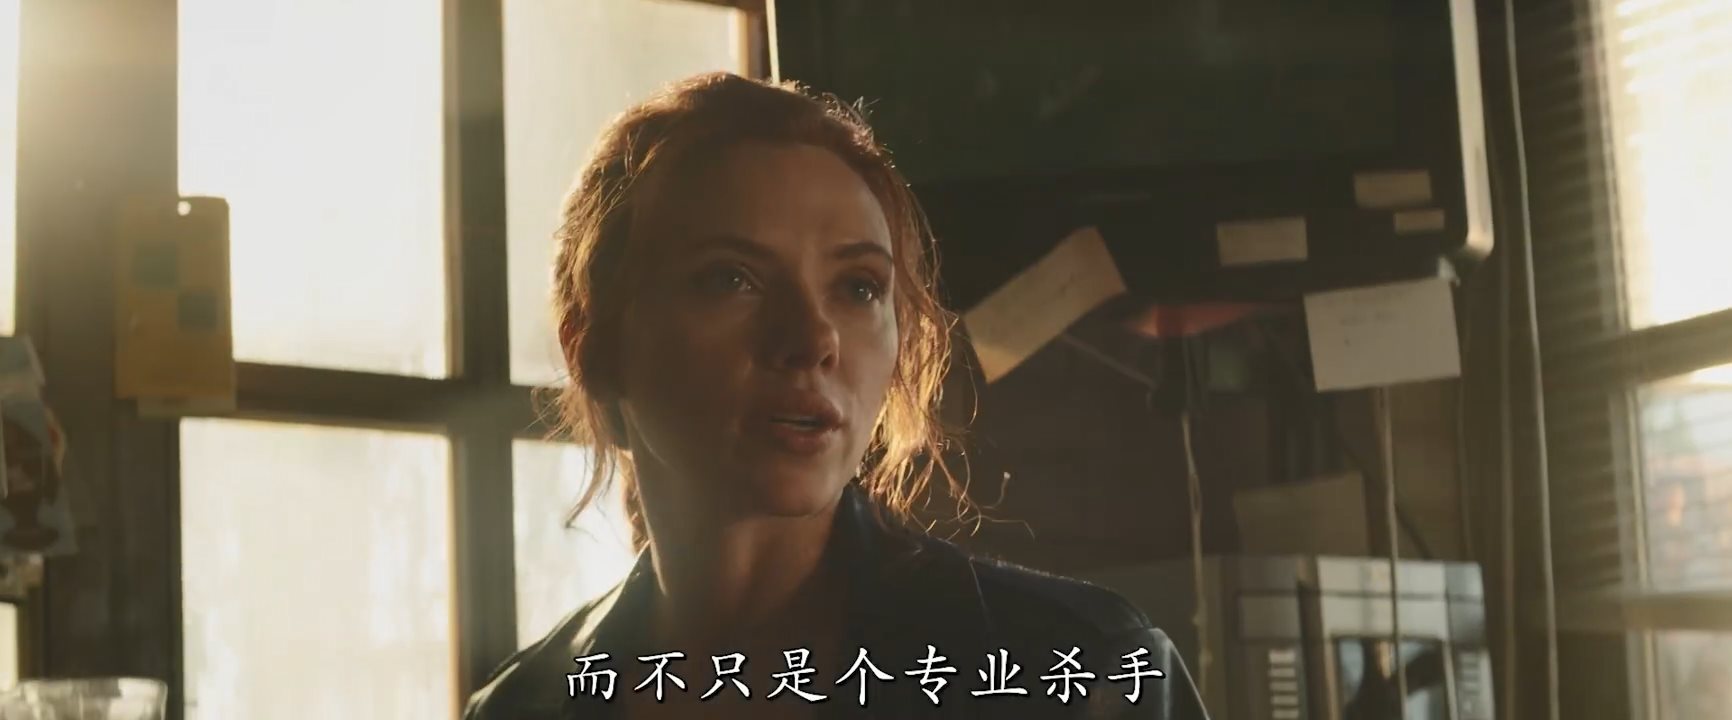 漫威《黑寡妇》全新中文预告 寡姐大战模仿大师